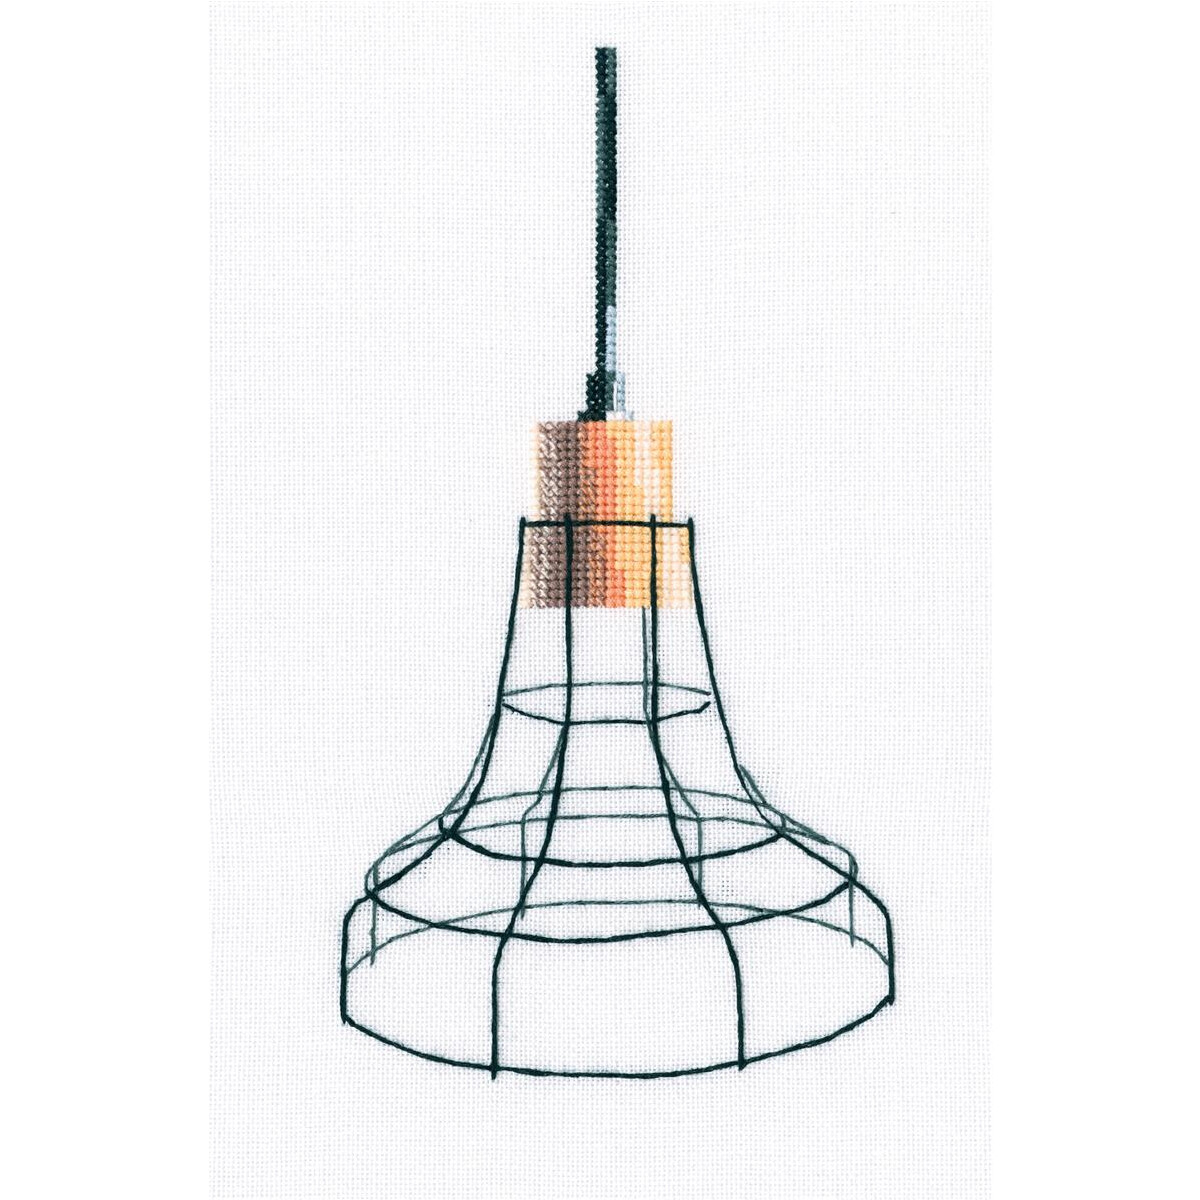 rto kruissteek set "Lamp in loft stijl" m801,...